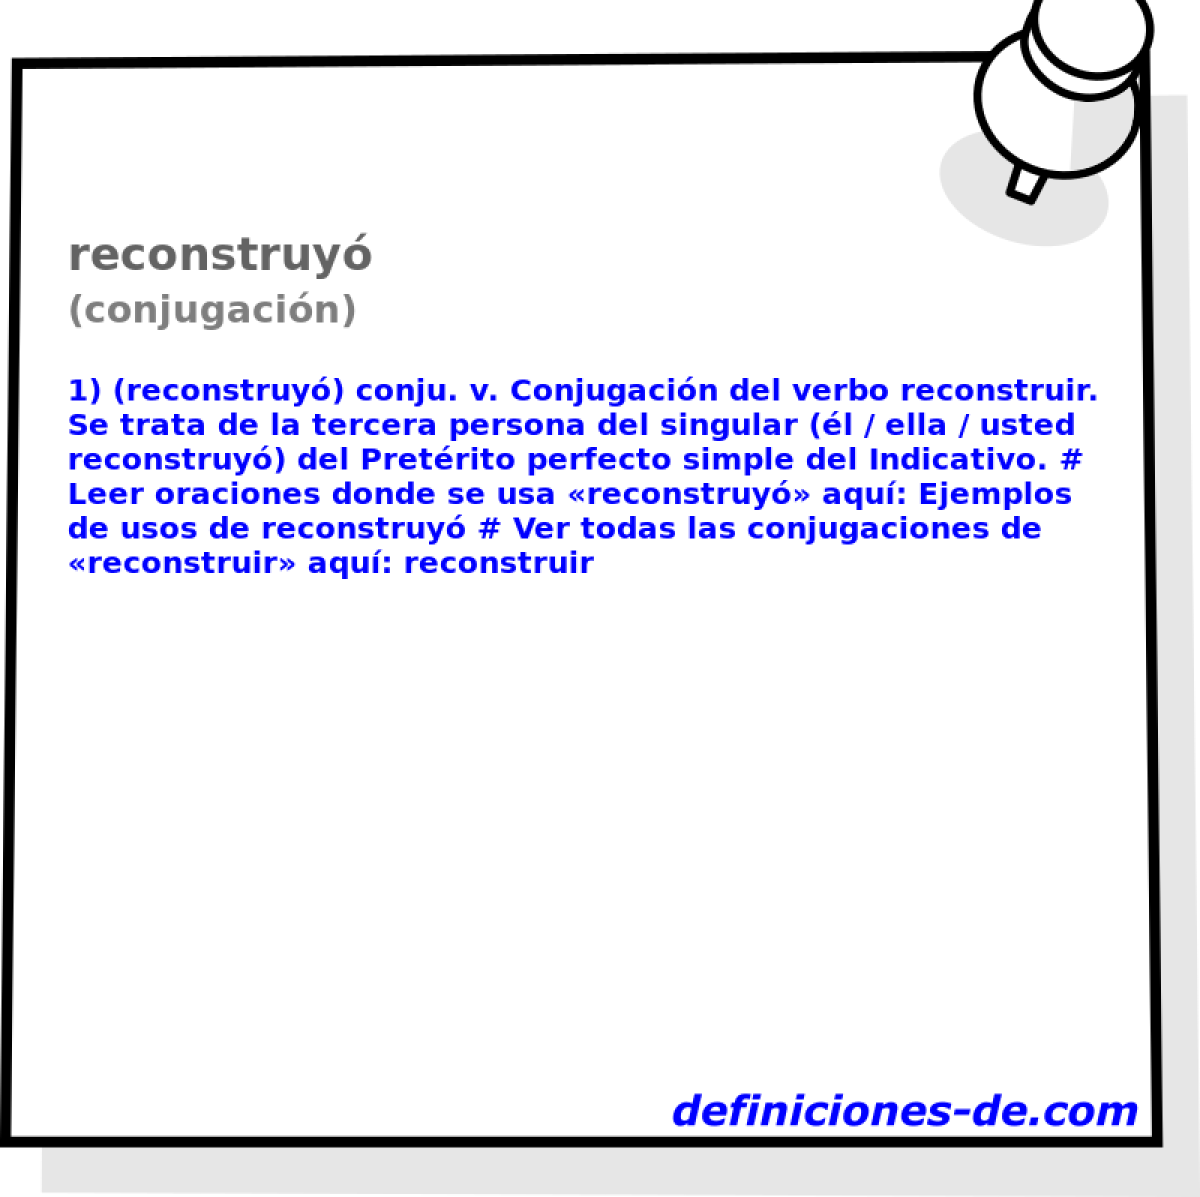 reconstruy (conjugacin)